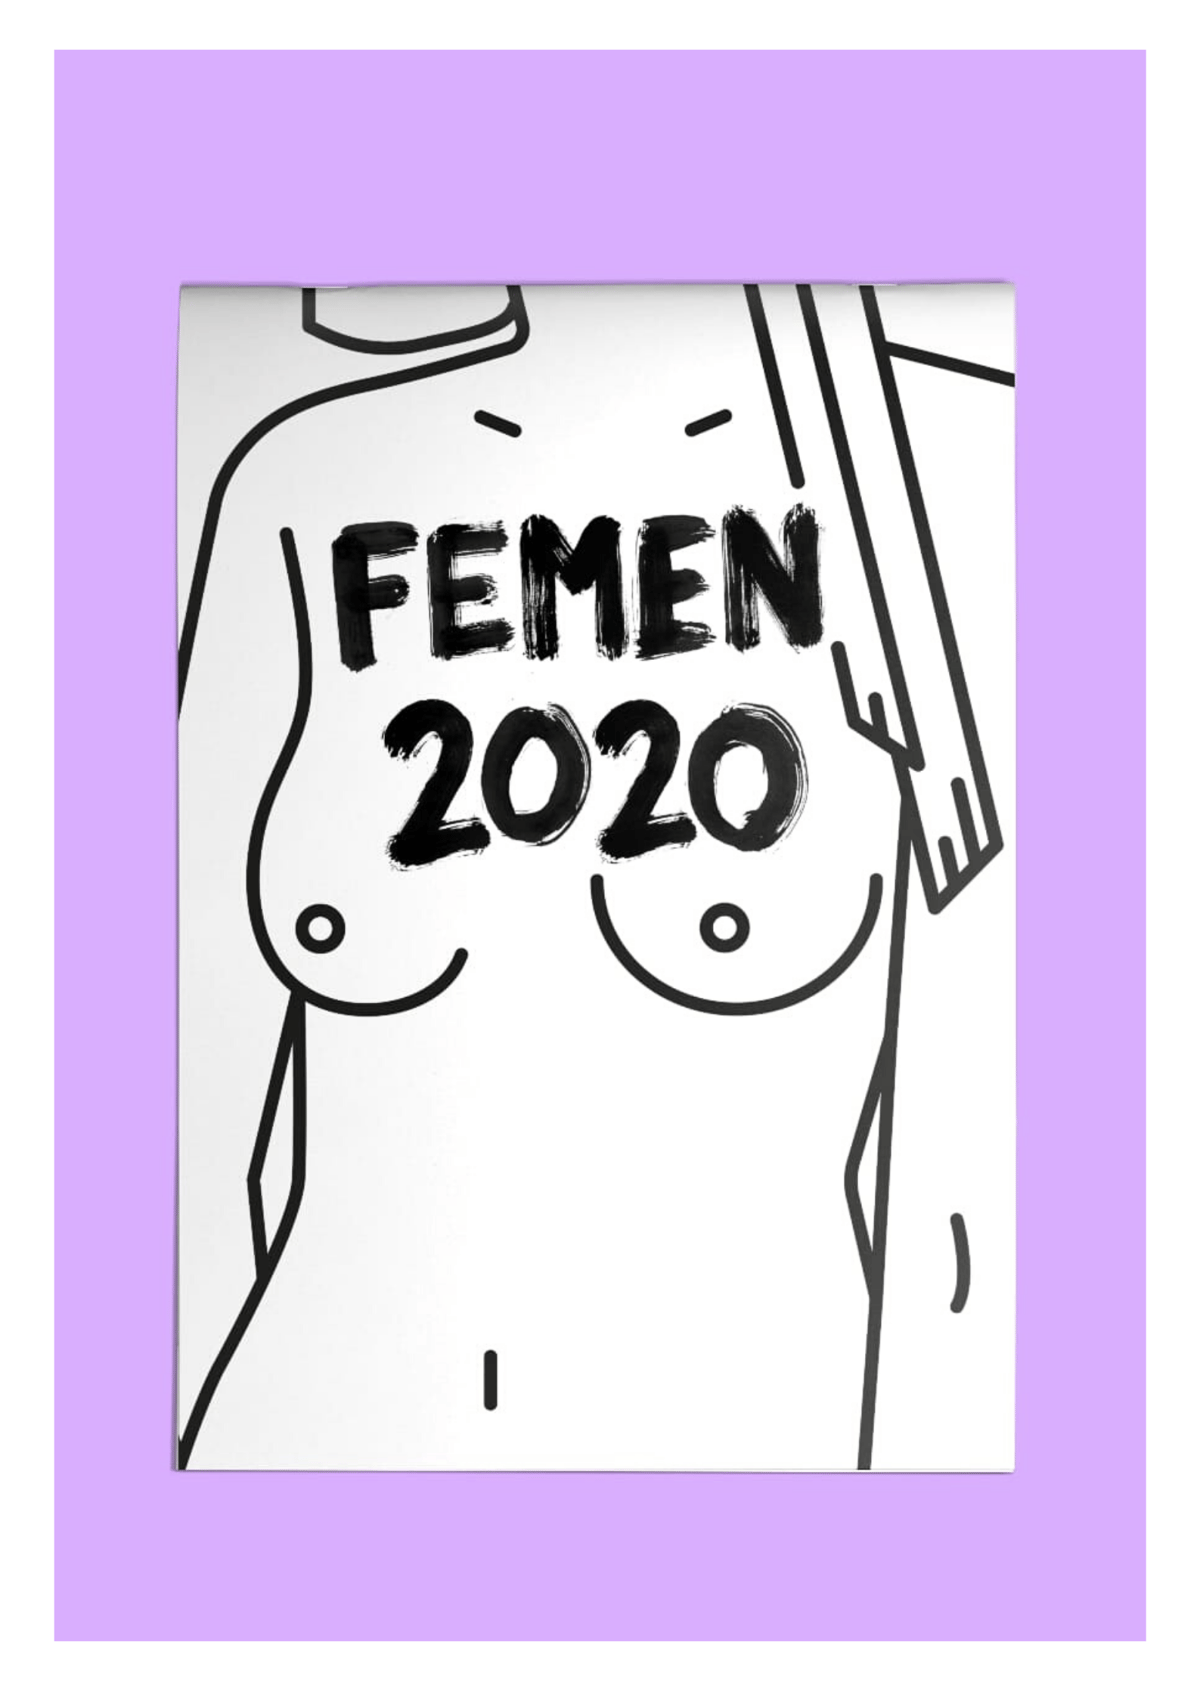 CALENDARIO FEMEN 2020